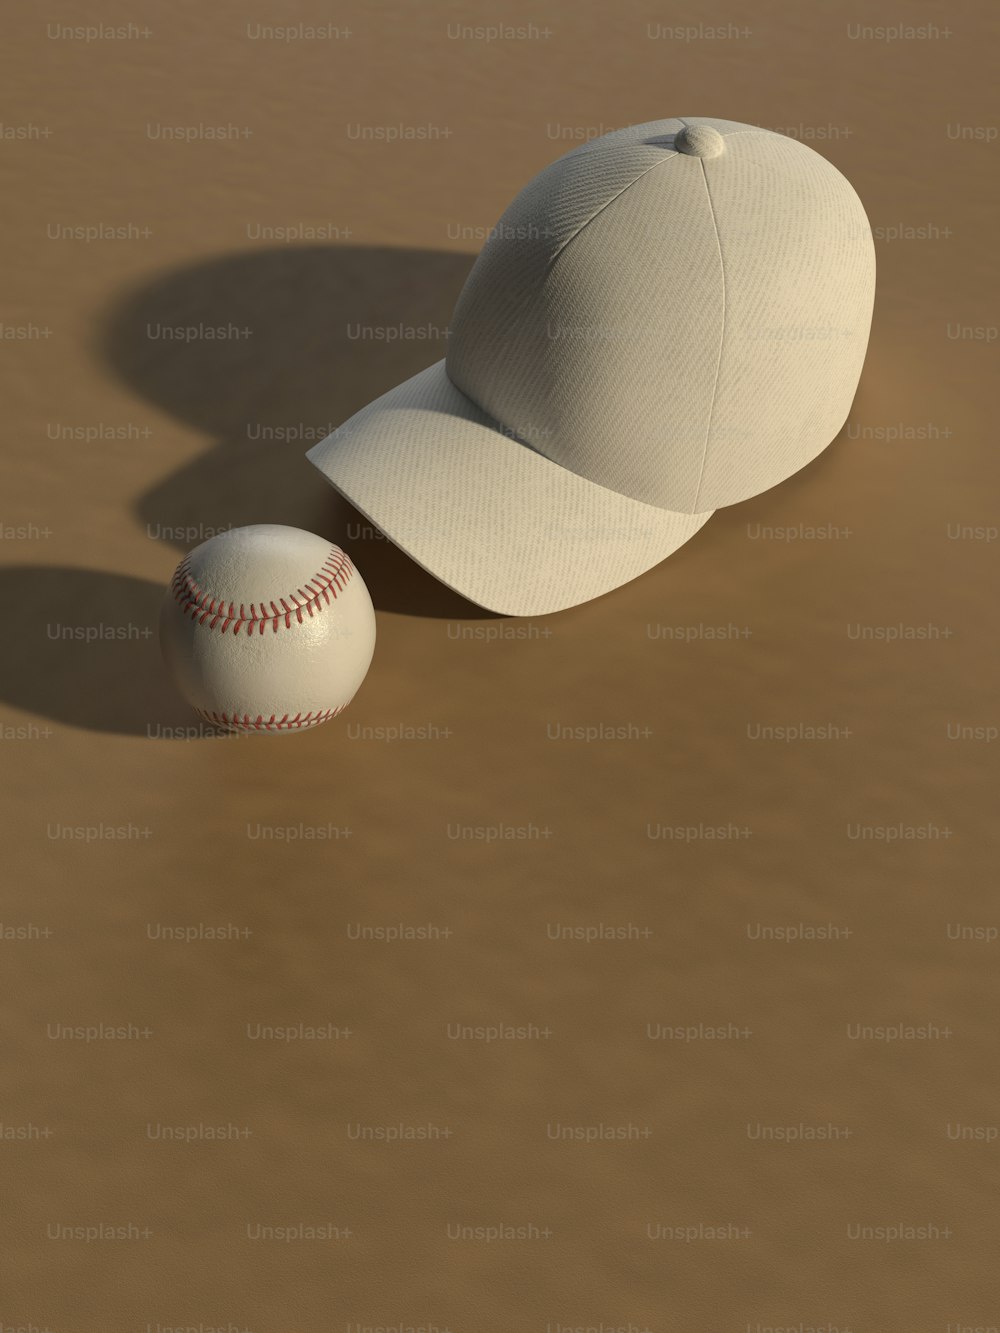 ein Baseball und eine Baseballkappe auf einer braunen Oberfläche